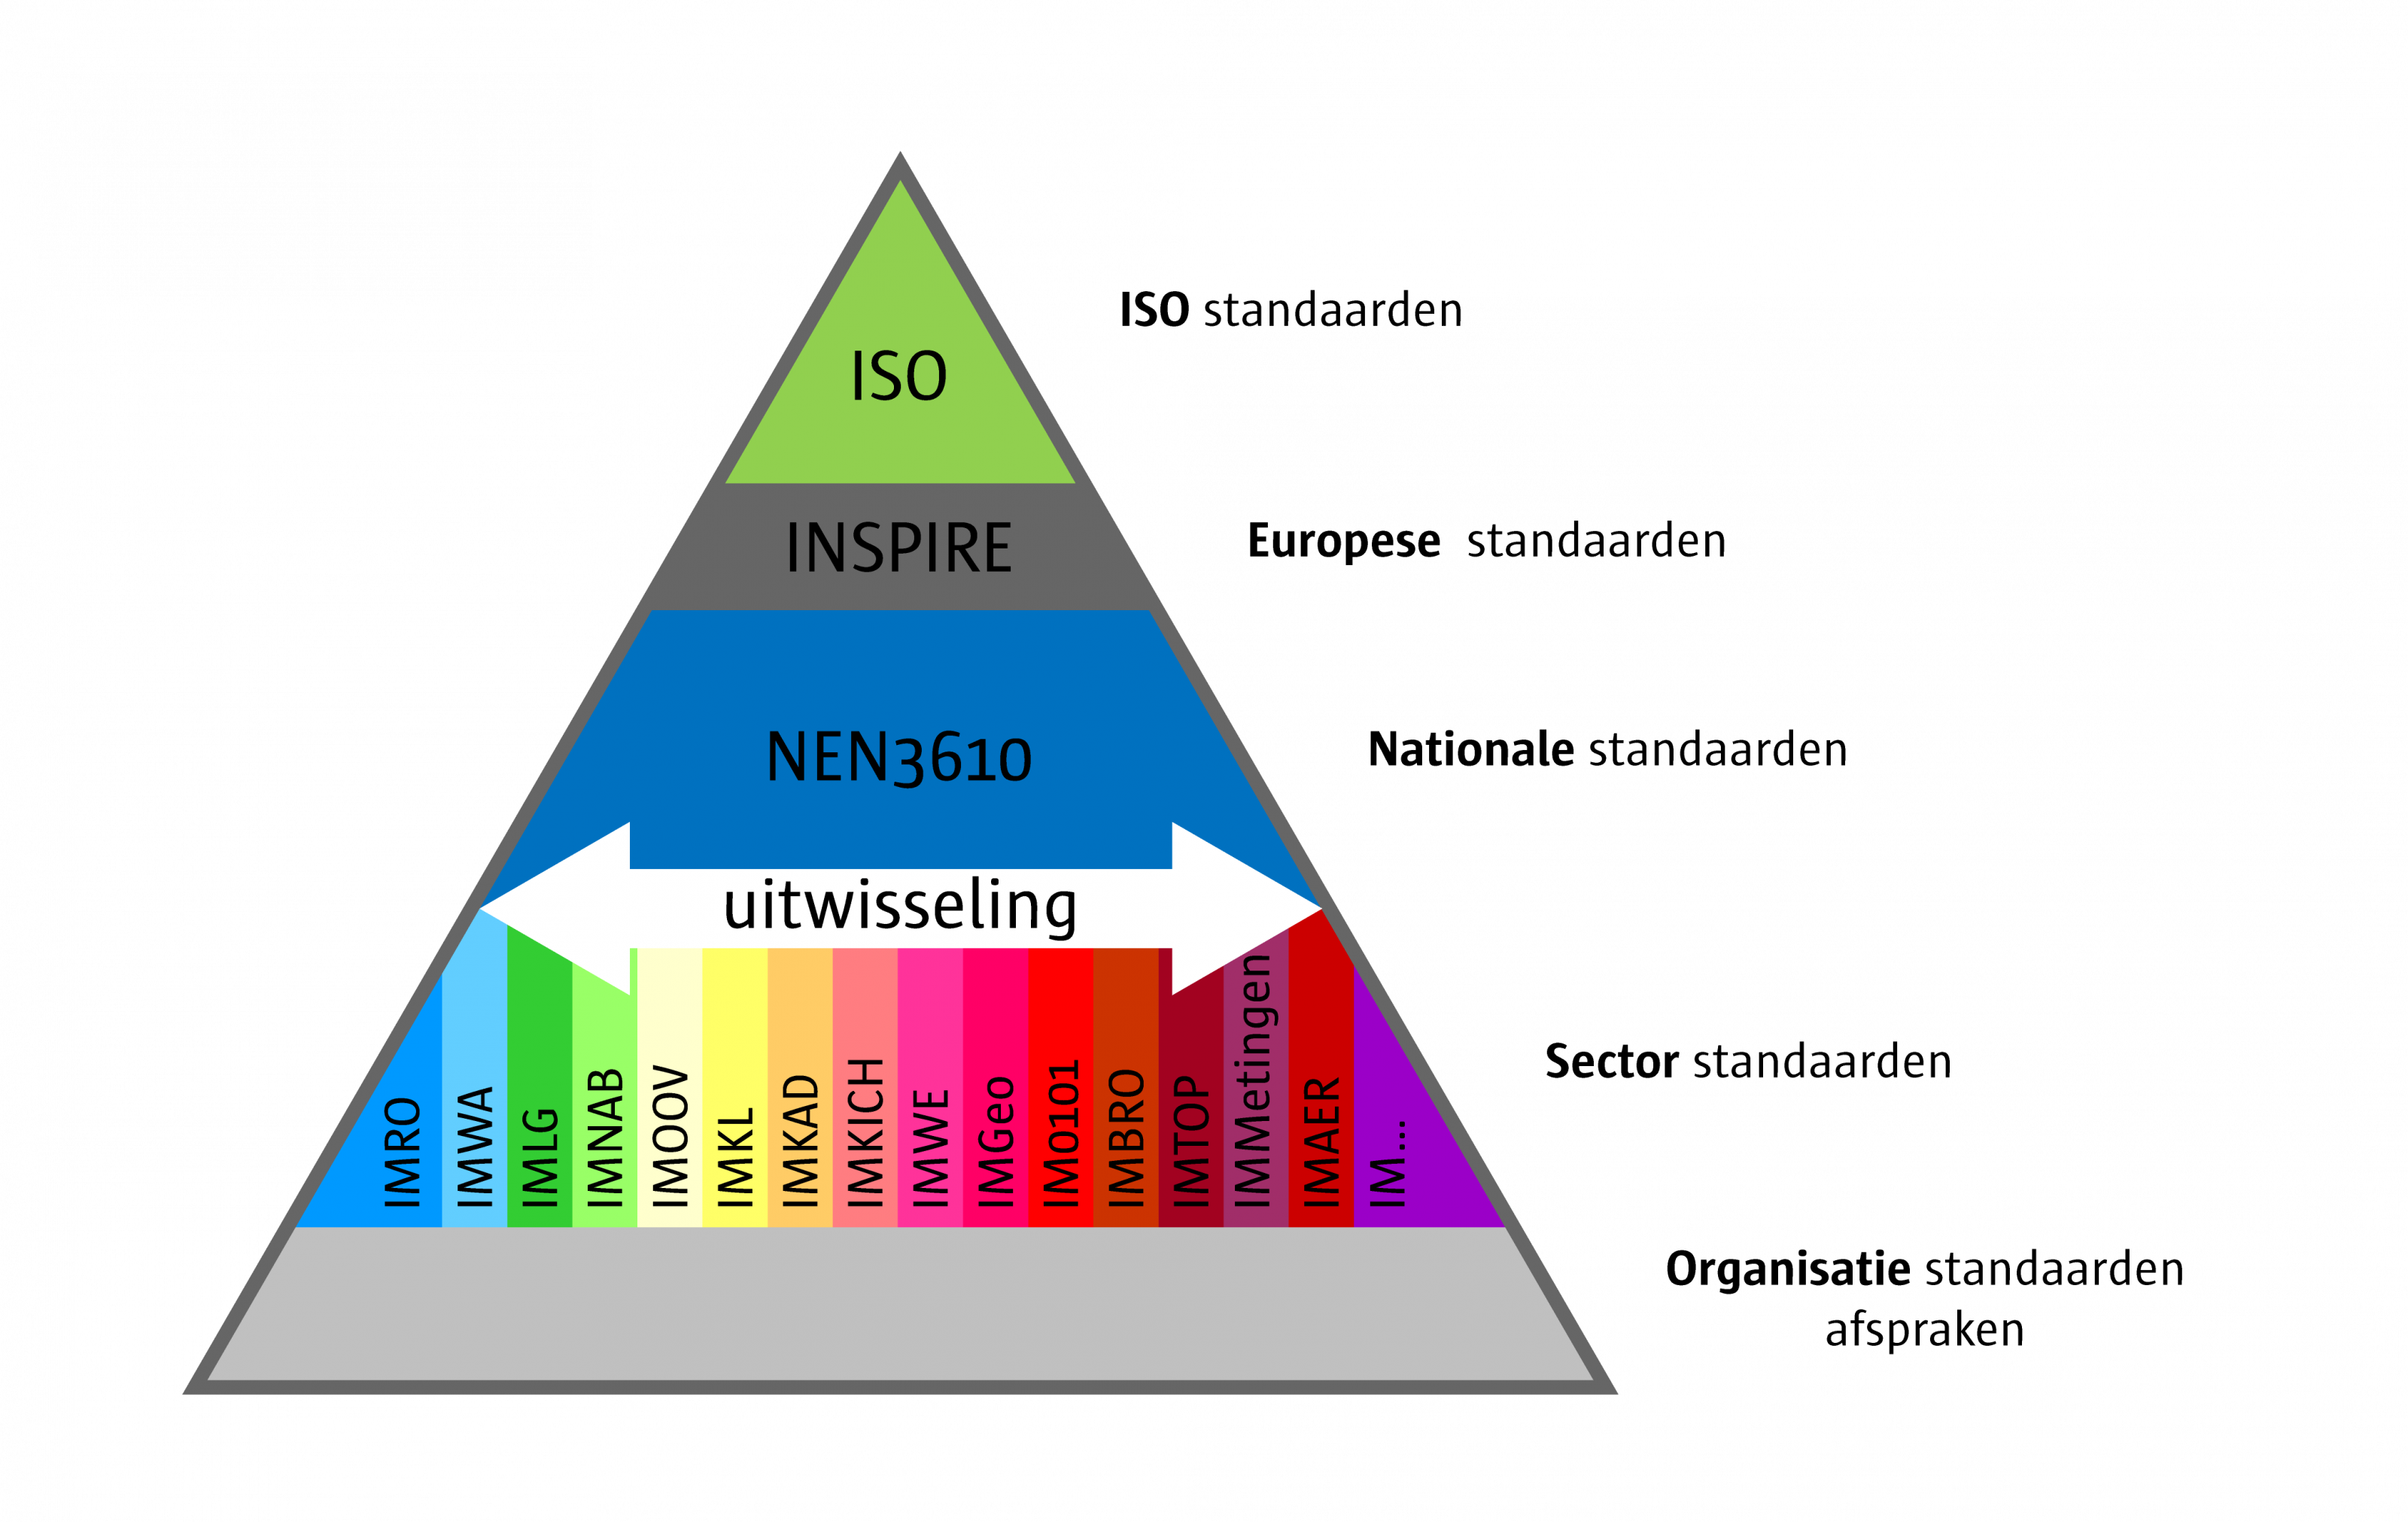 Informatiemodellen zijn gebaseerd op het nationale NEN3610 model dat op haar beurt is gebaseerd op het Europese INSPIRE model dat weer geent is op het internationale ISO model. Deze samenhang is in de vorm van een pyramide geillustreerd.  